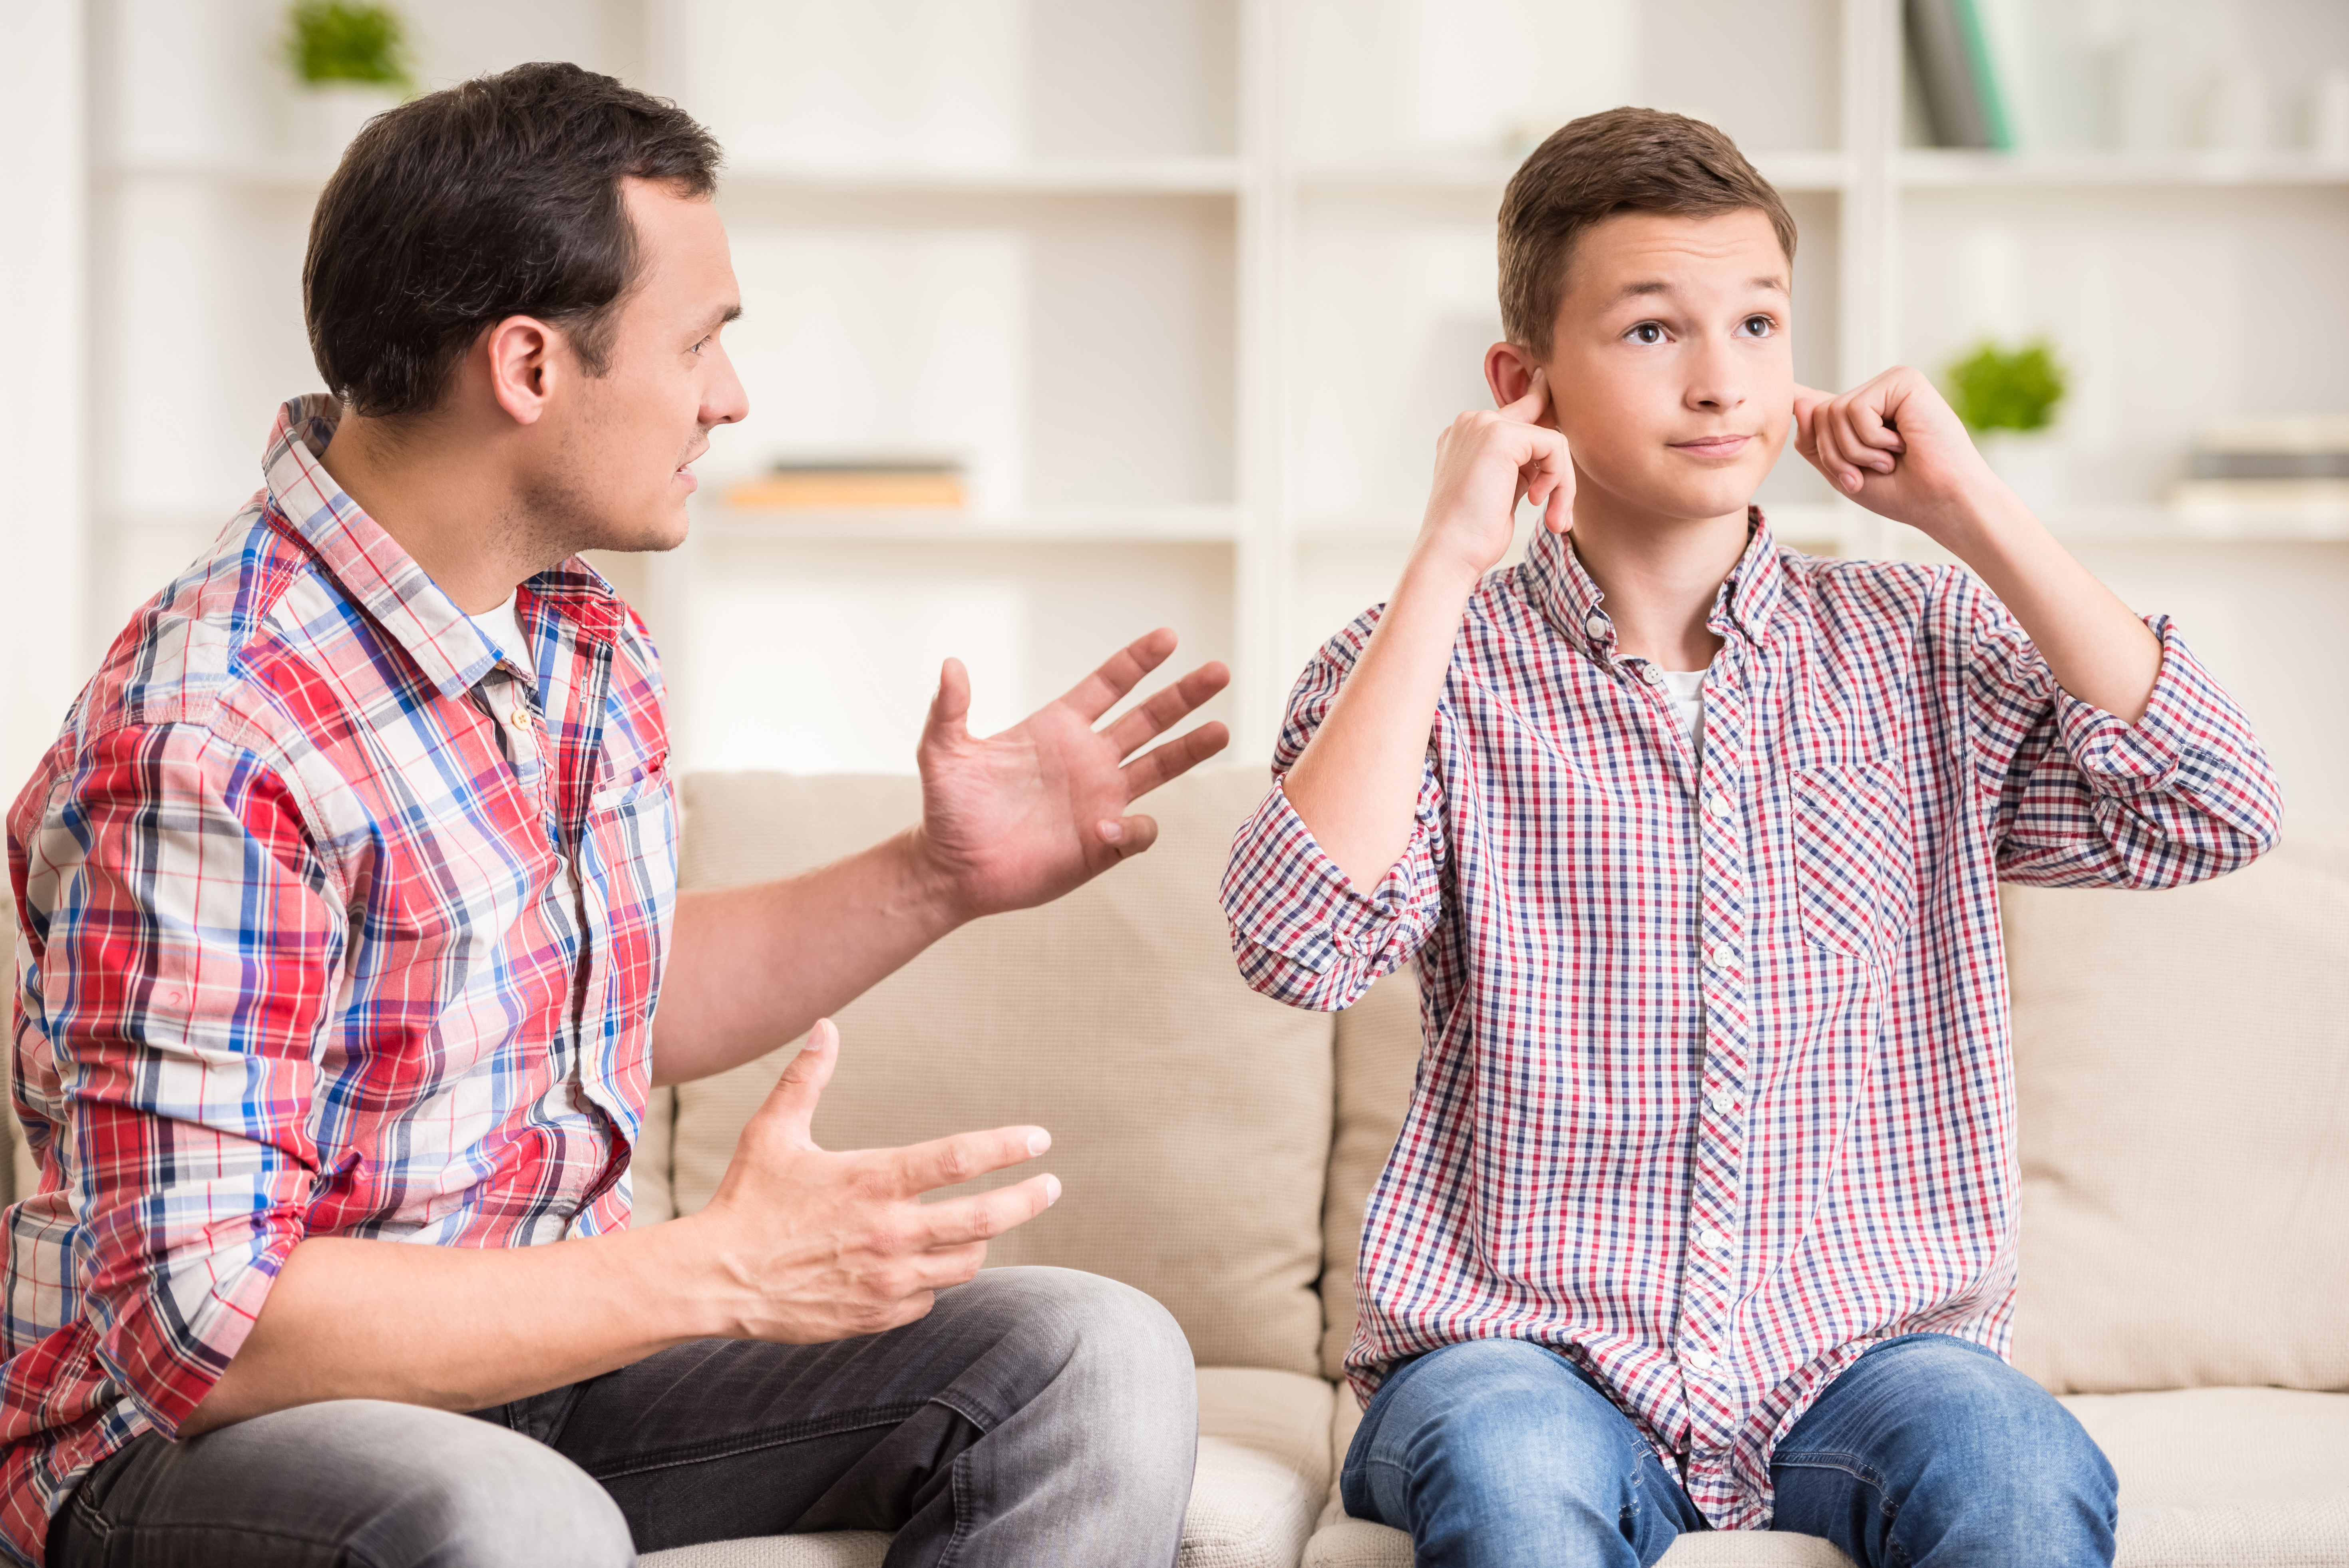 Fils se bouchant les oreilles pendant que son père lui parle| Source : Shutterstock